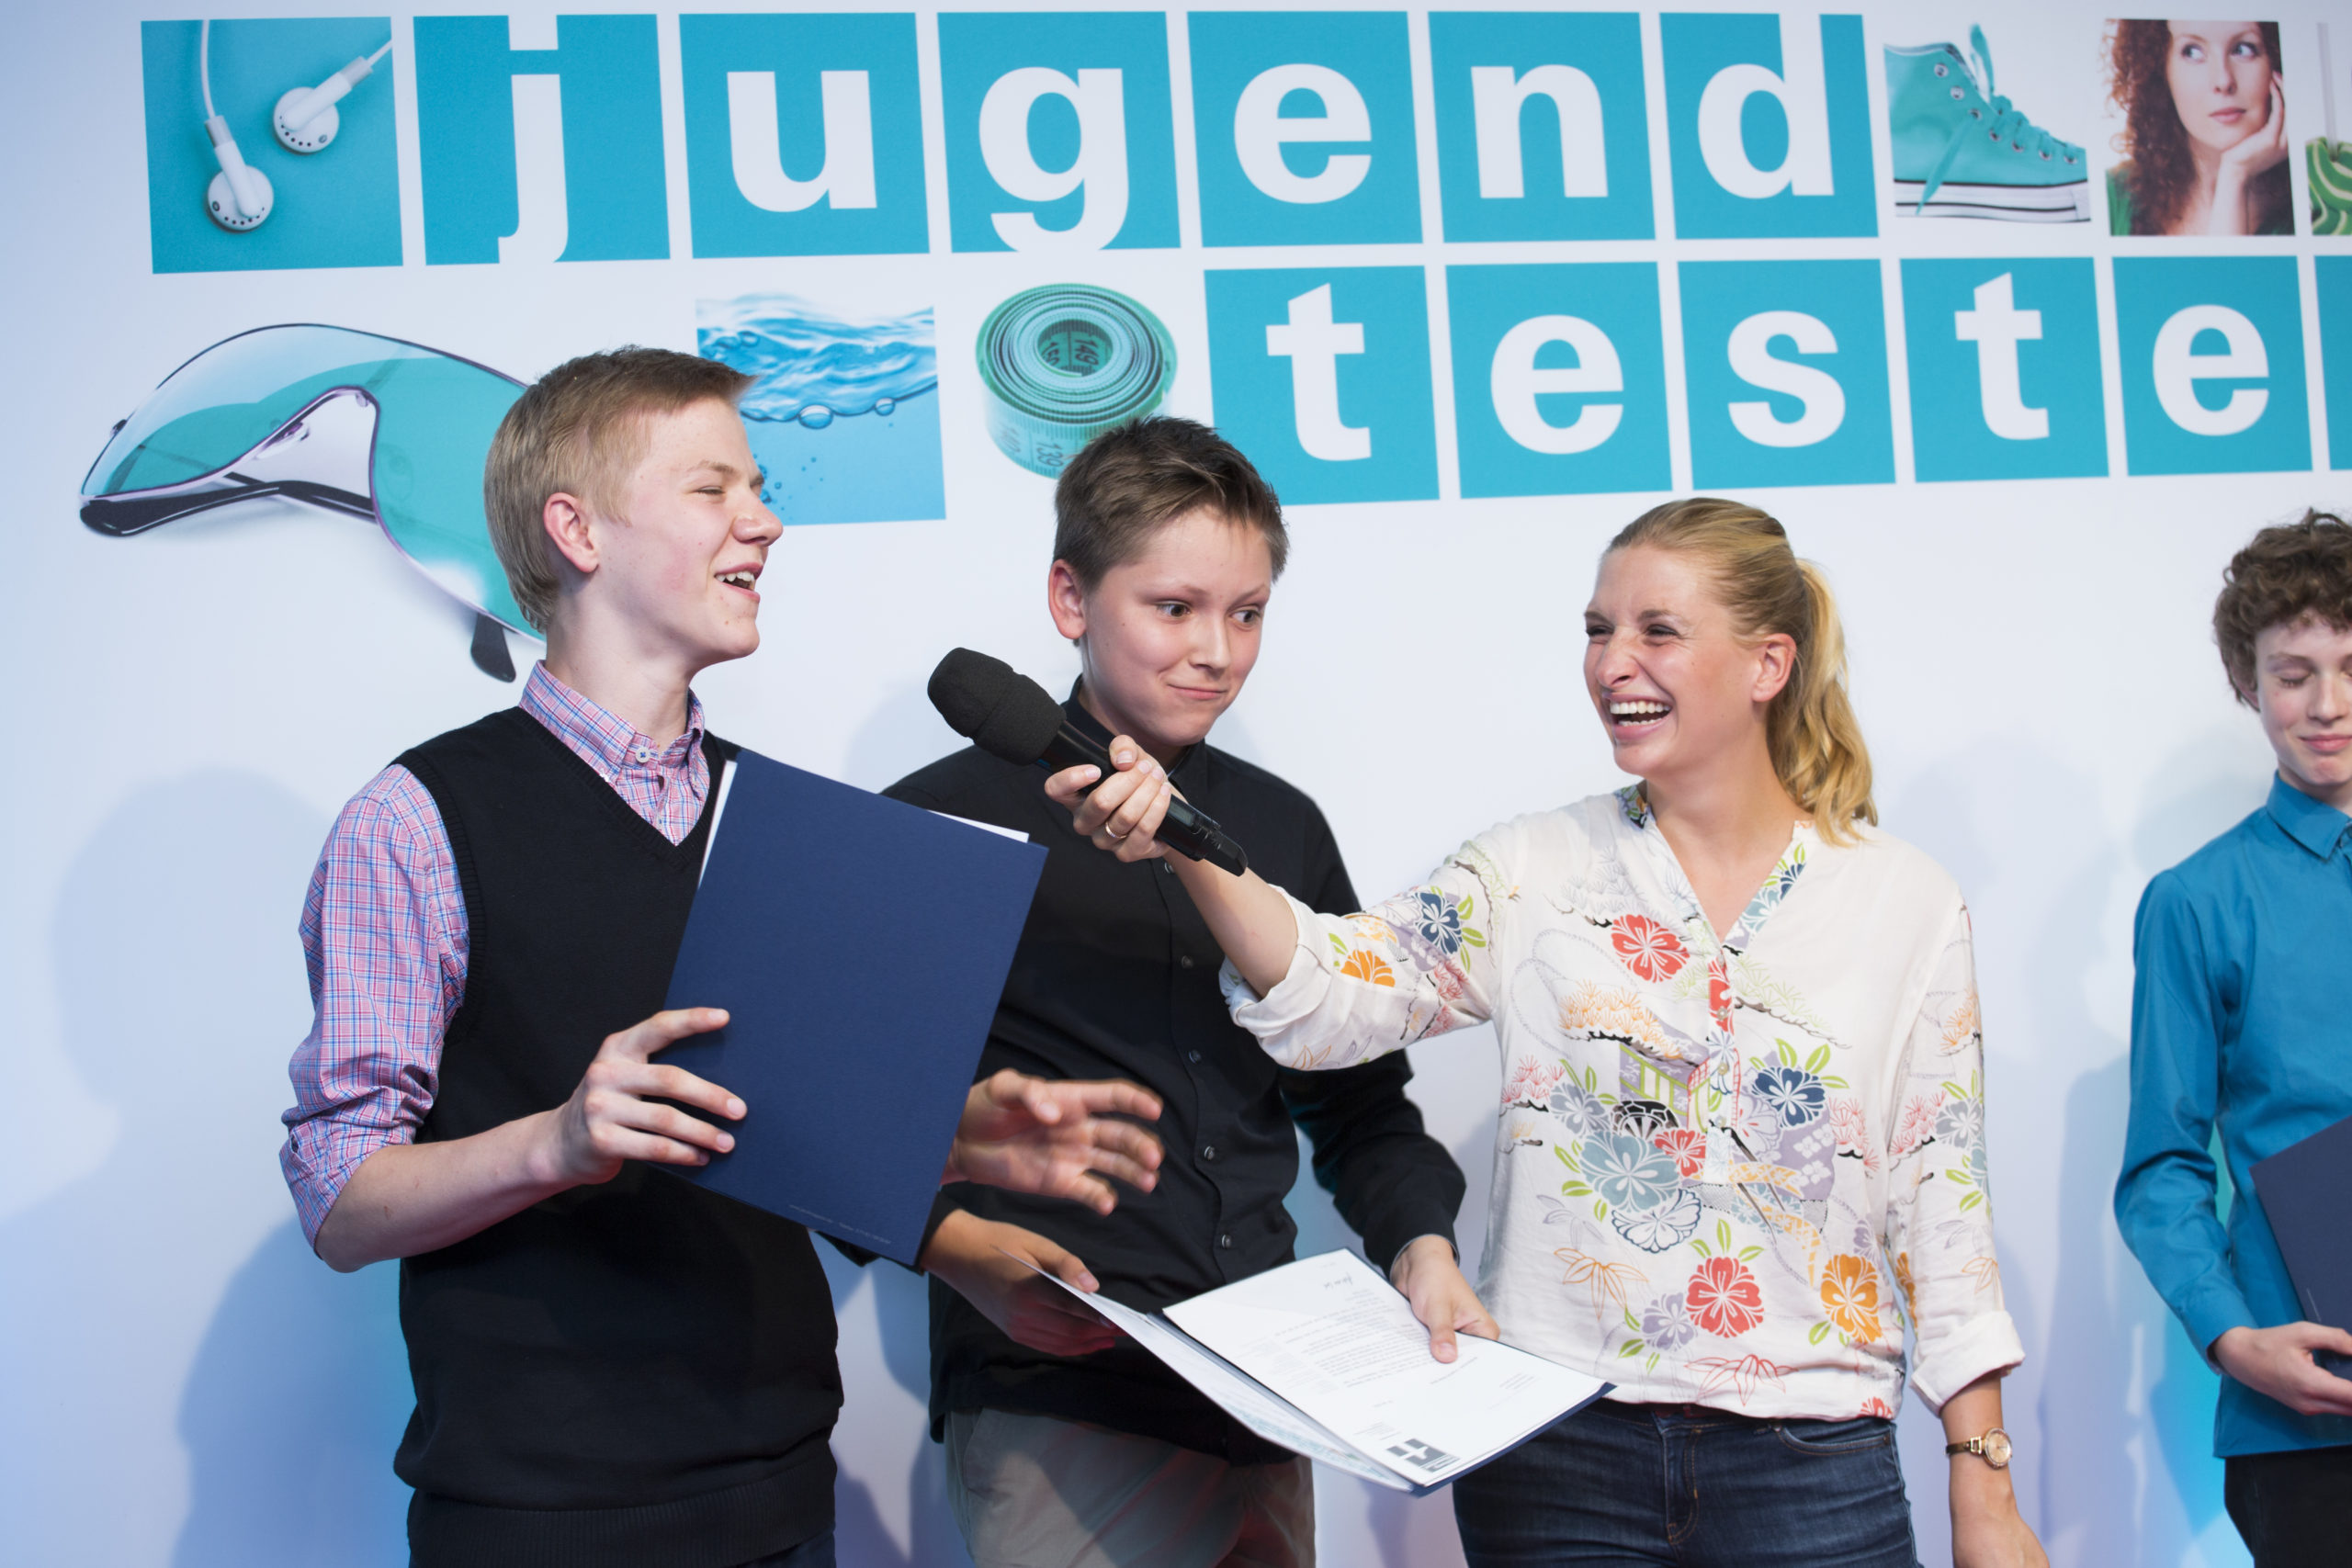 Jugend testet und Frankfurter Buchmesse für Stiftung Warentest